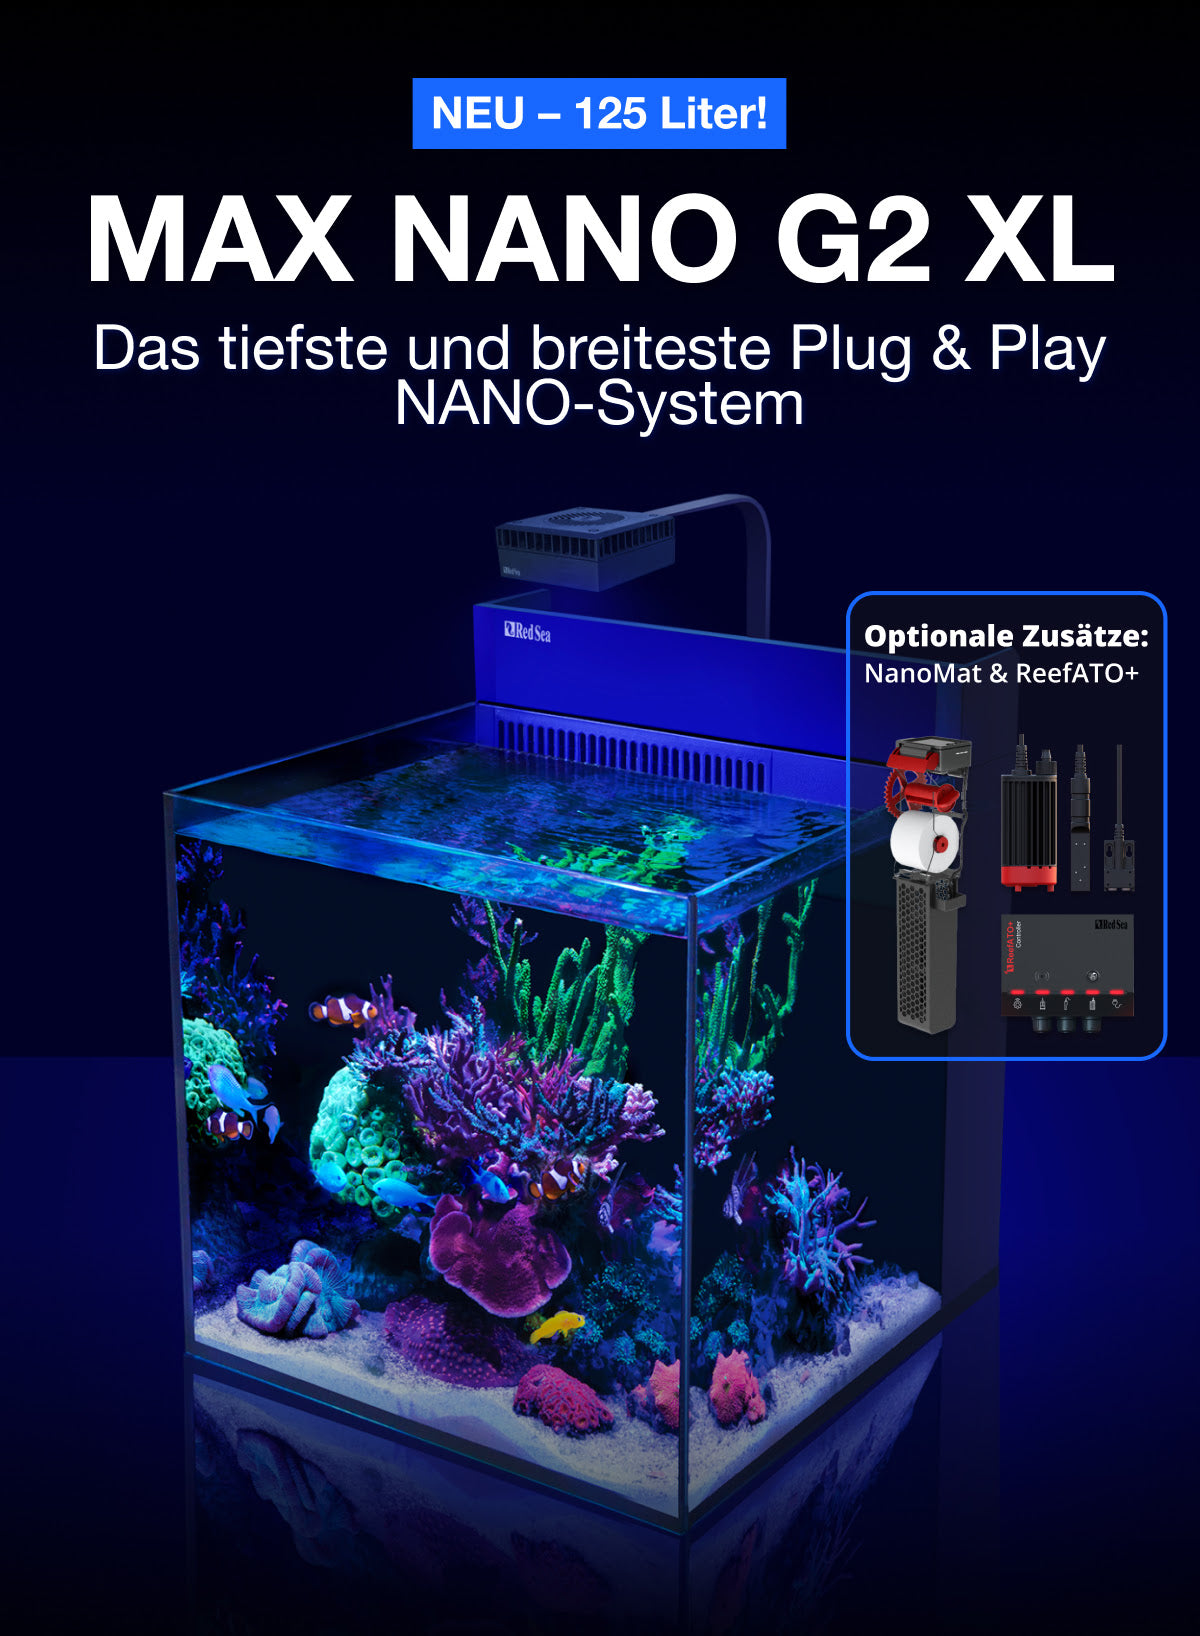 Max Nano G2 XL, 125 Liter